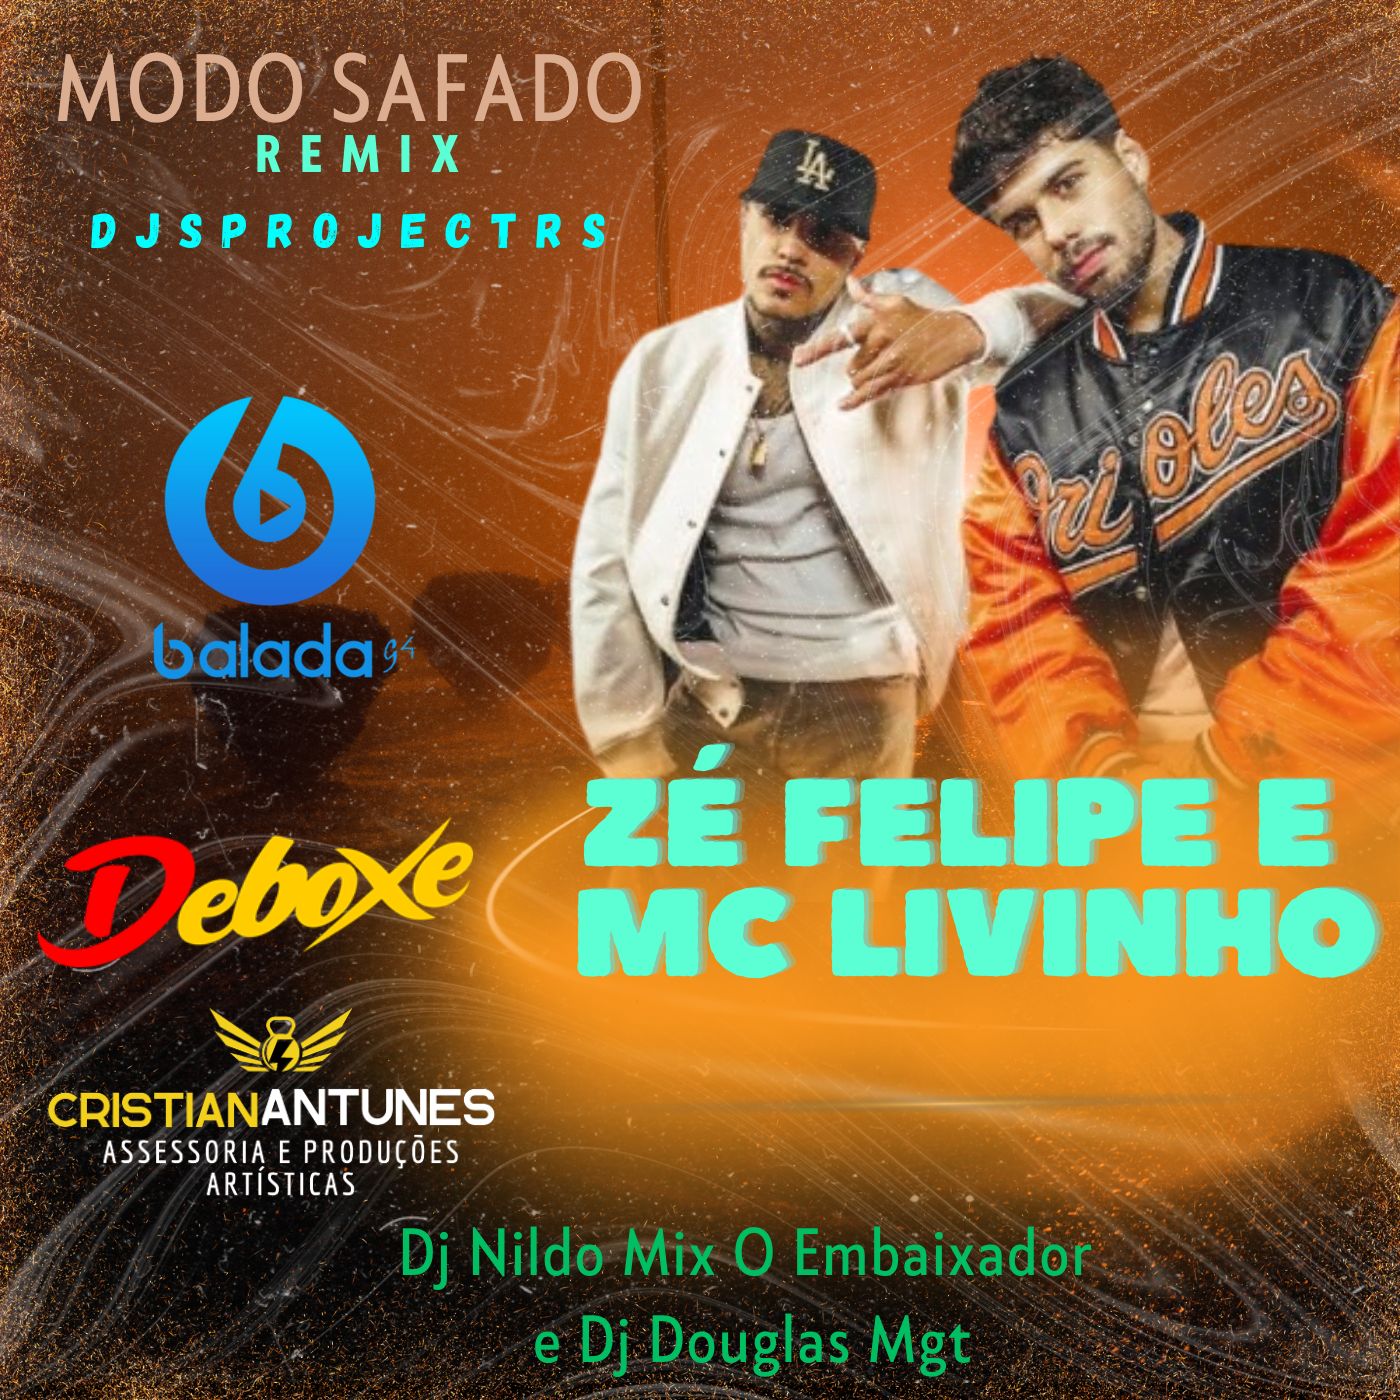 Zé Felipe e MC Livinho - Modo Safado Remix Djs Project Rs